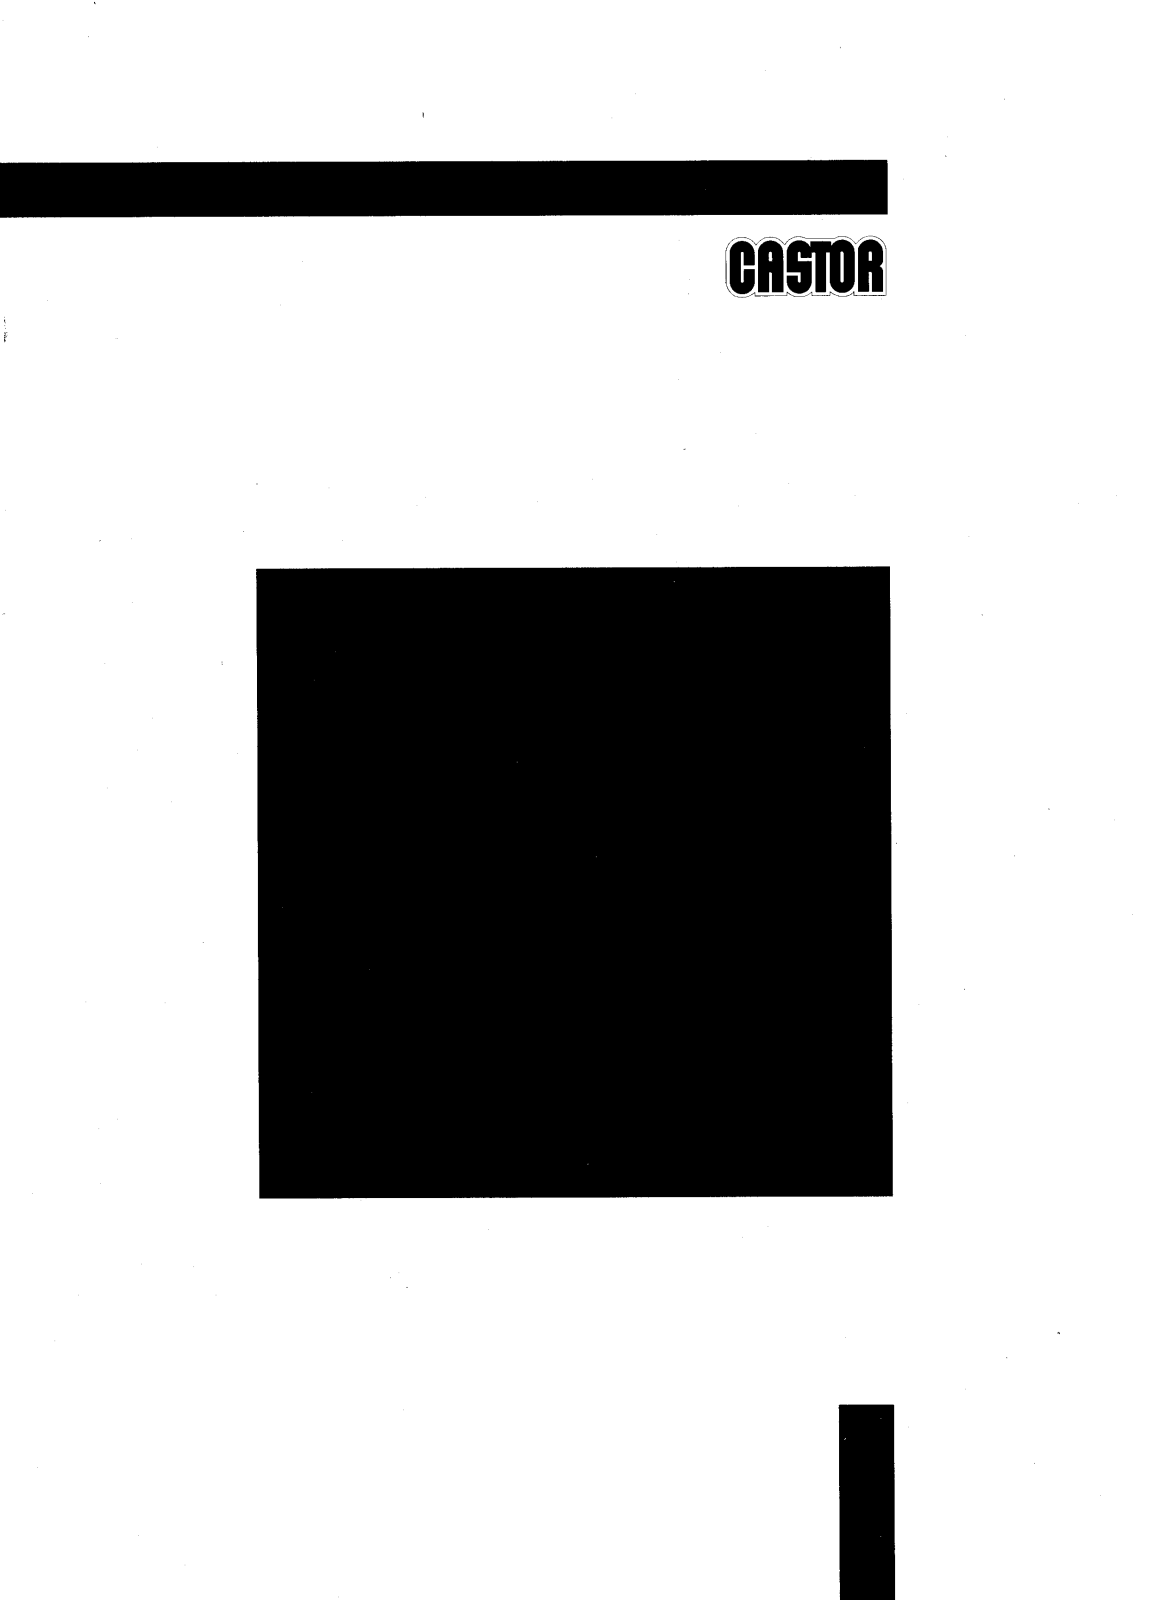 Castor CWM1200C, CWM1000C User Manual